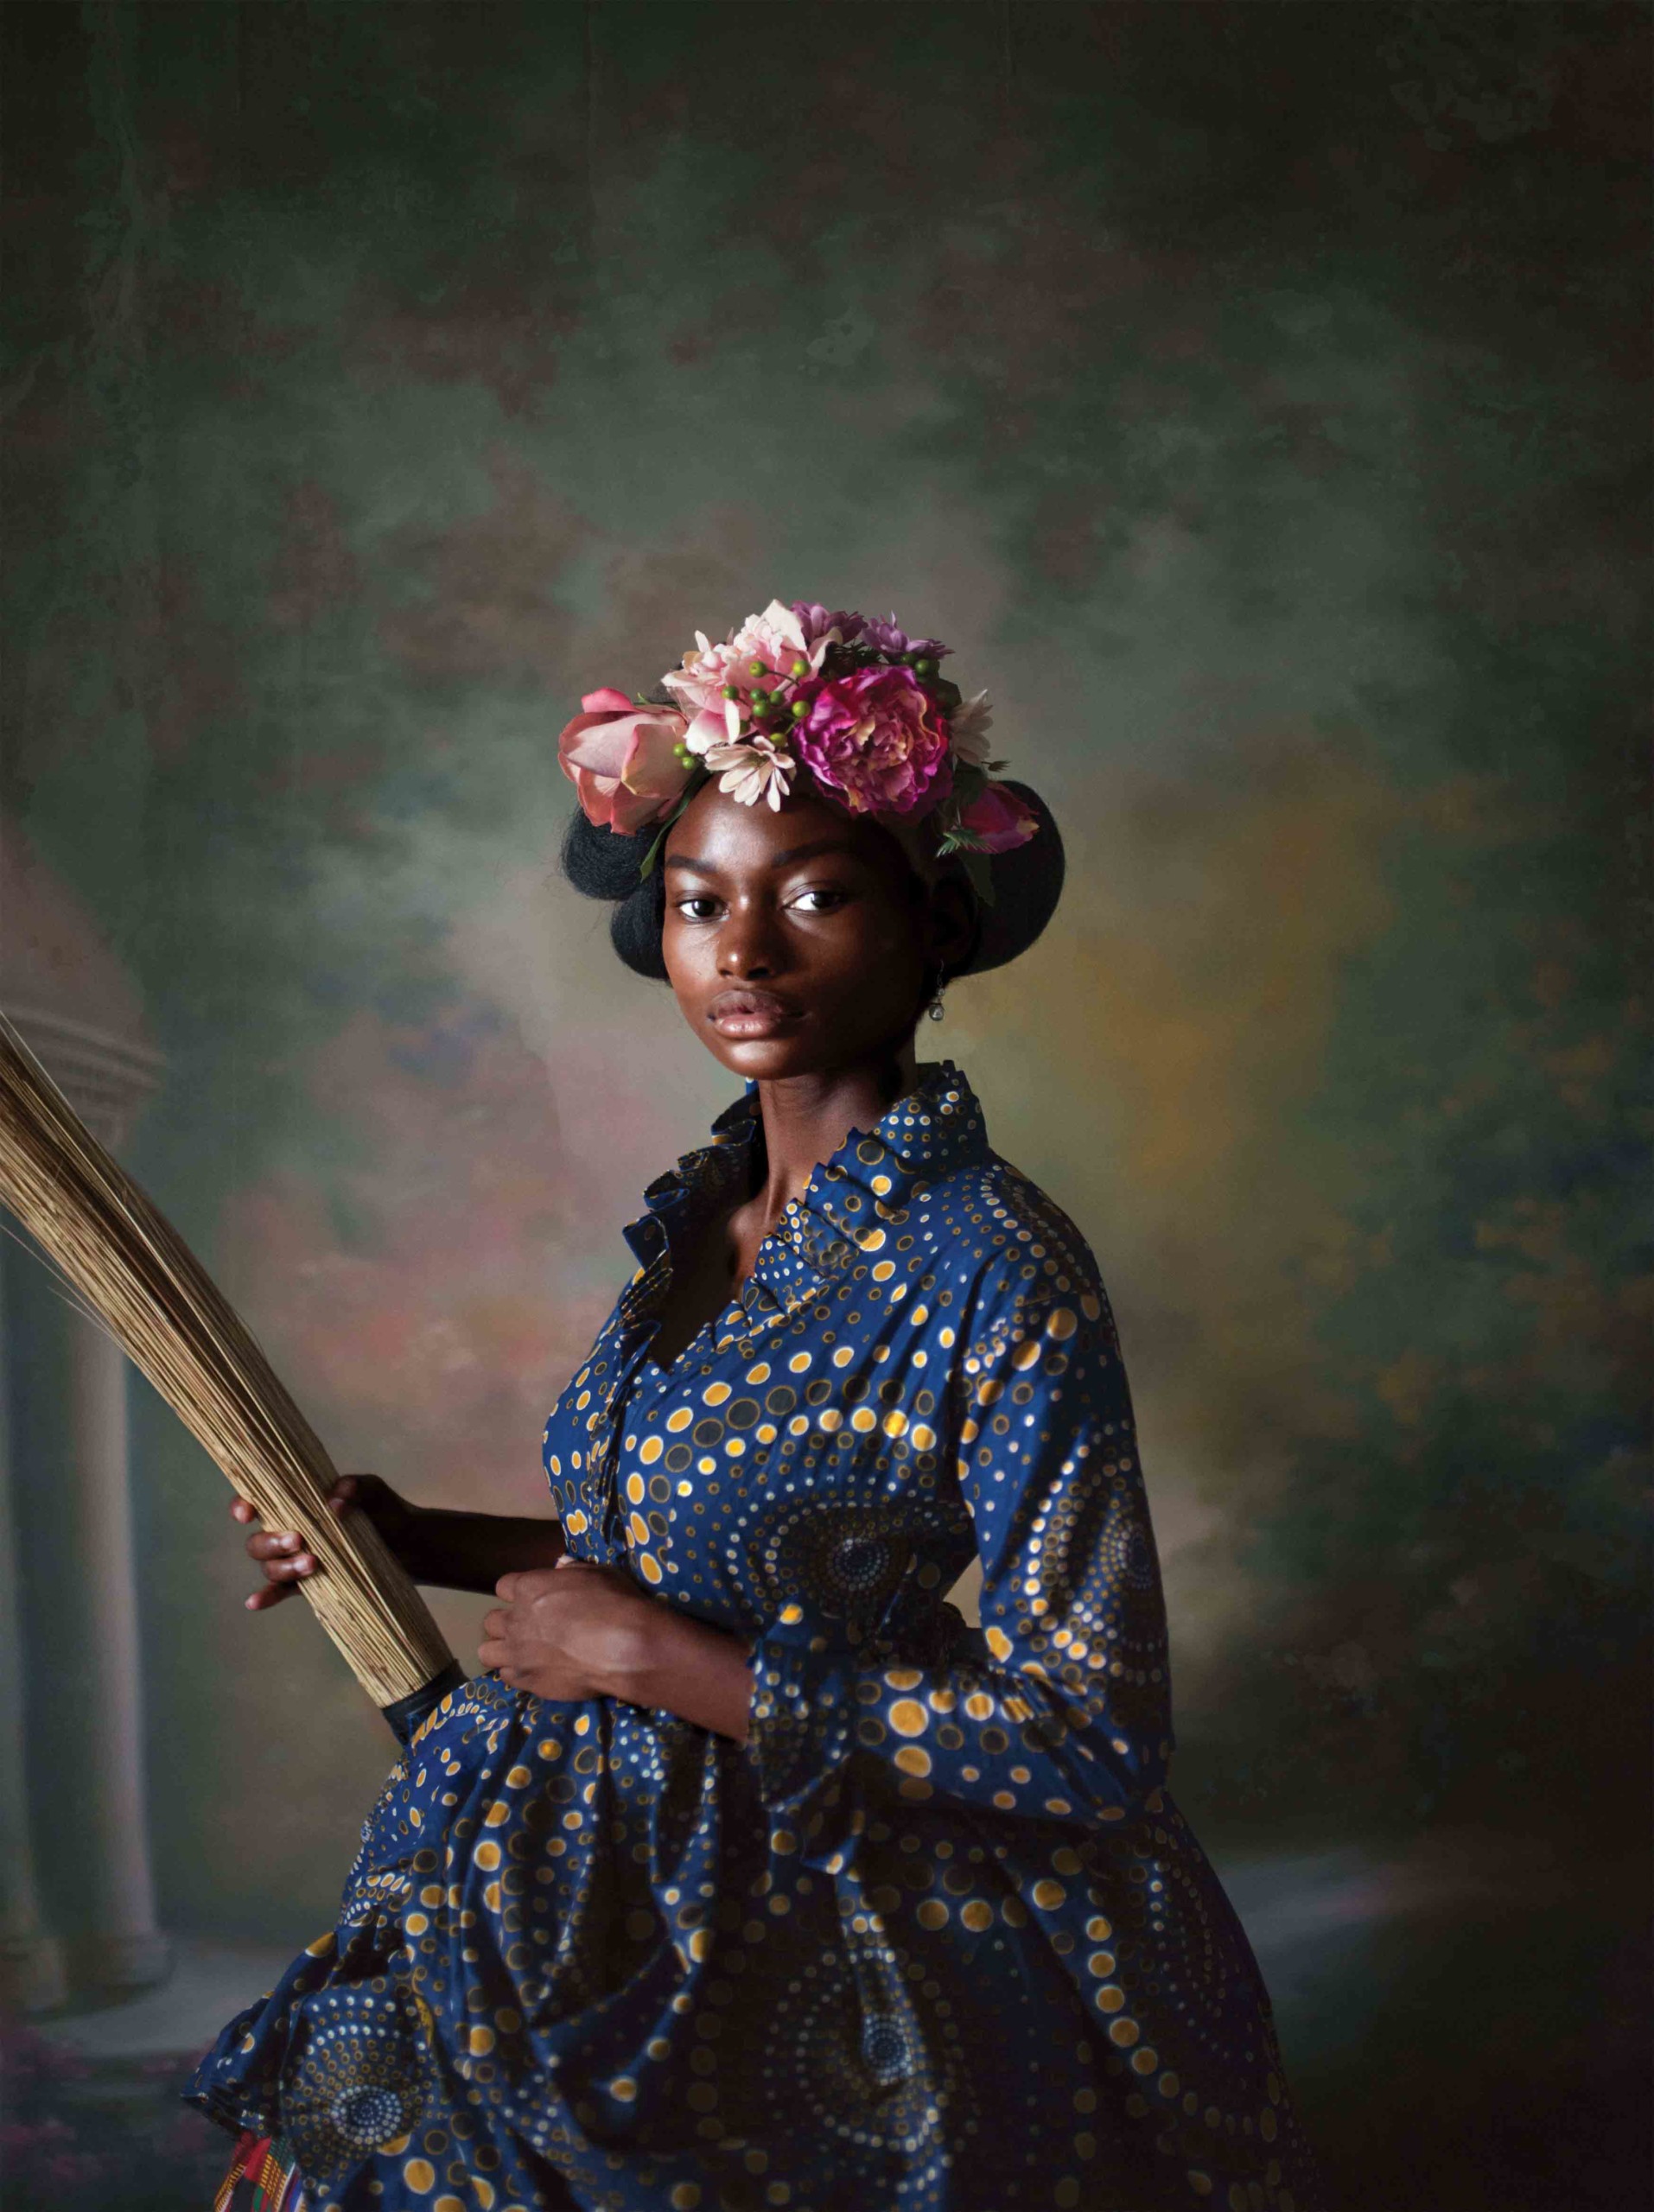 Tamary Kudita, African Victorian, 2019. ©Tamary Kudita. Courtesy of the artist.